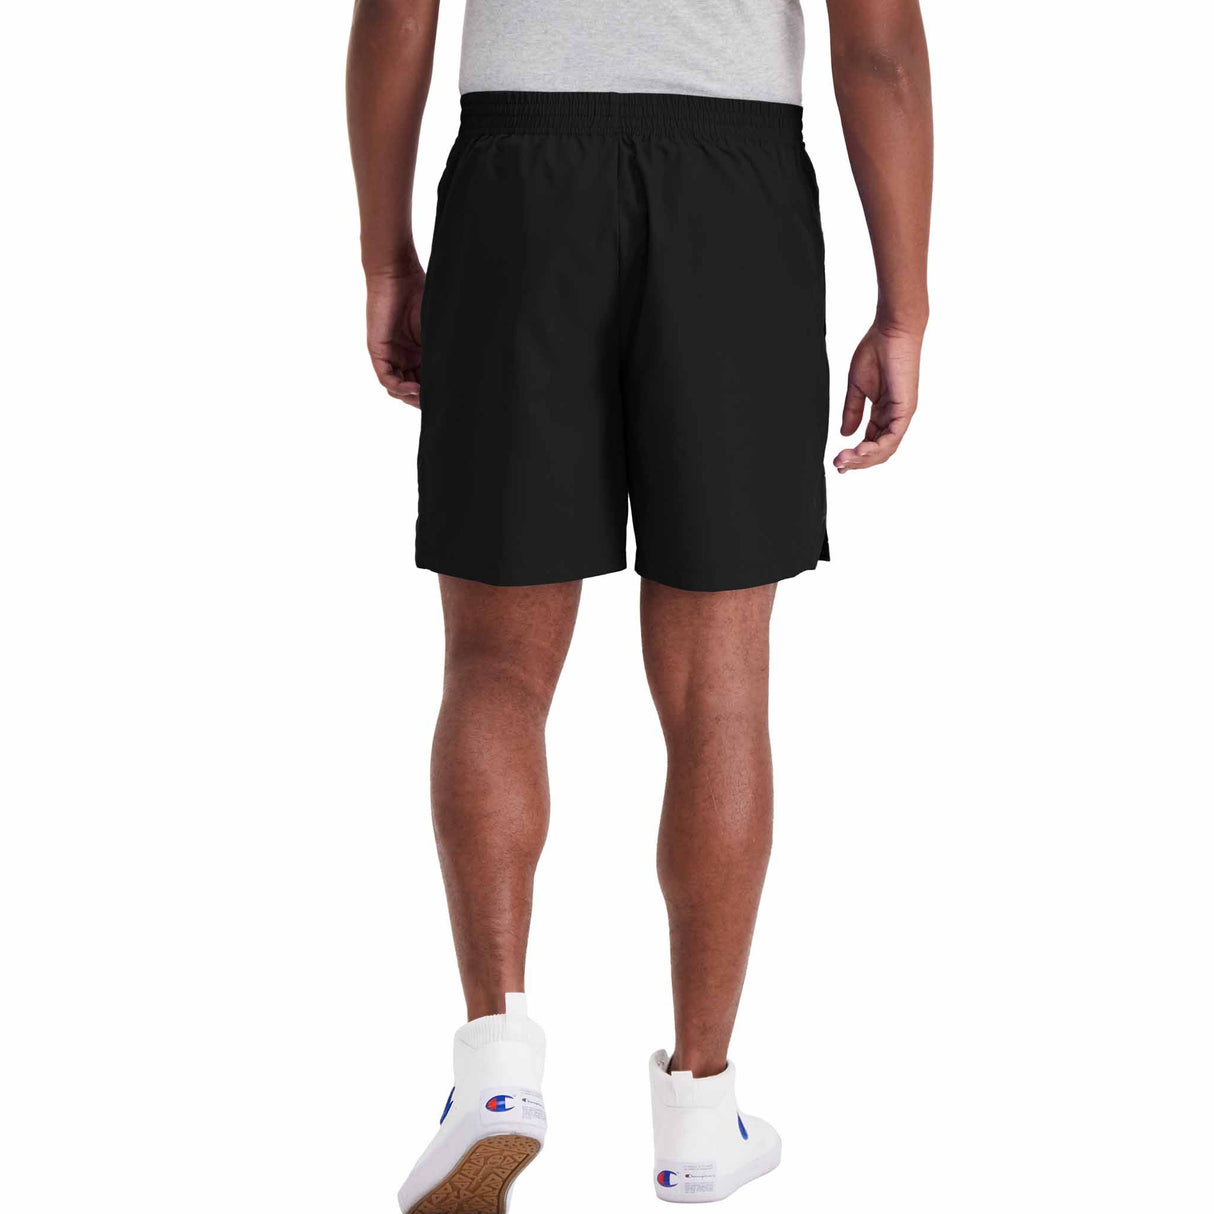 Champion 7 Inch Woven Sport Shorts W/Out Liner short sans doublure pour homme vue de dos